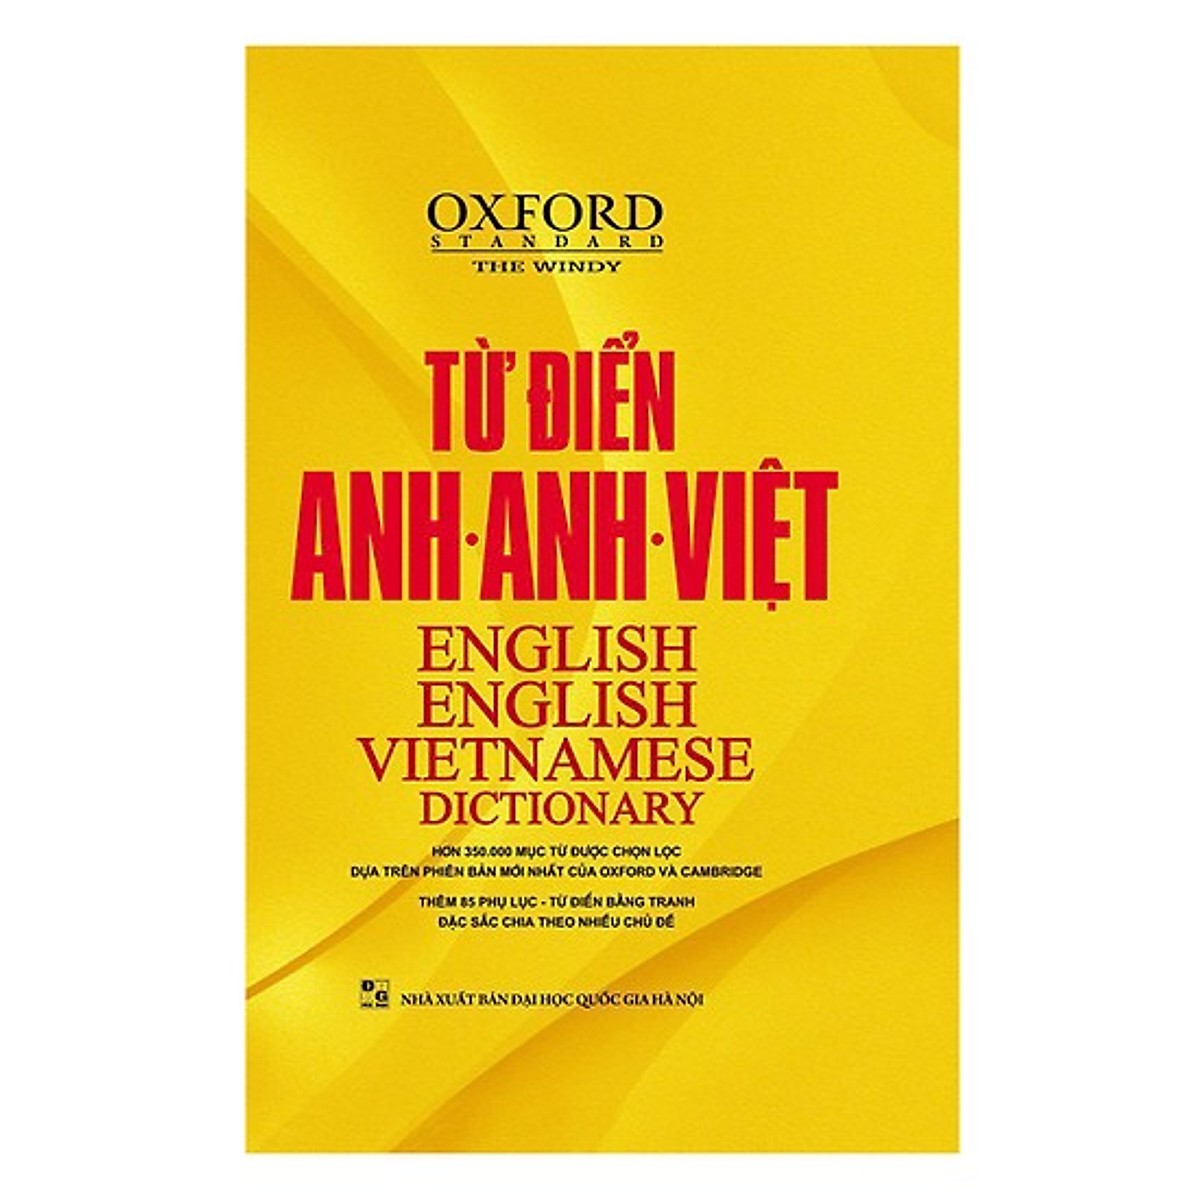 Từ Điển Oxford Anh - Anh - Việt Bìa Vàng Cứng (tặng kèm giấy nhớ PS)